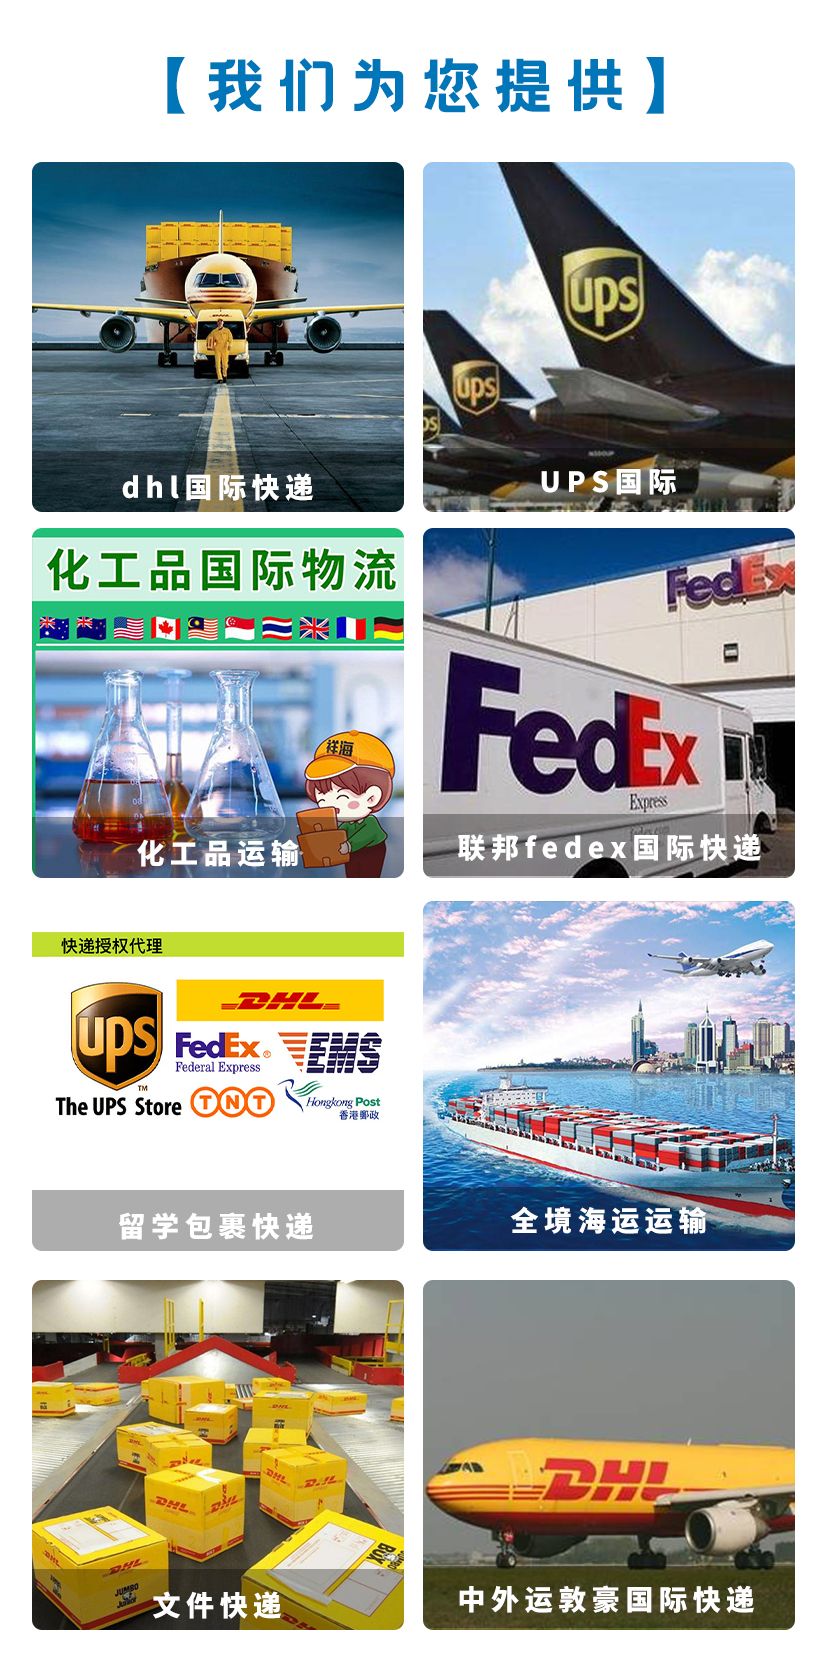 北京UPS国际快递-UPS国际快递-DHL快递寄件(12月2日图文更新)